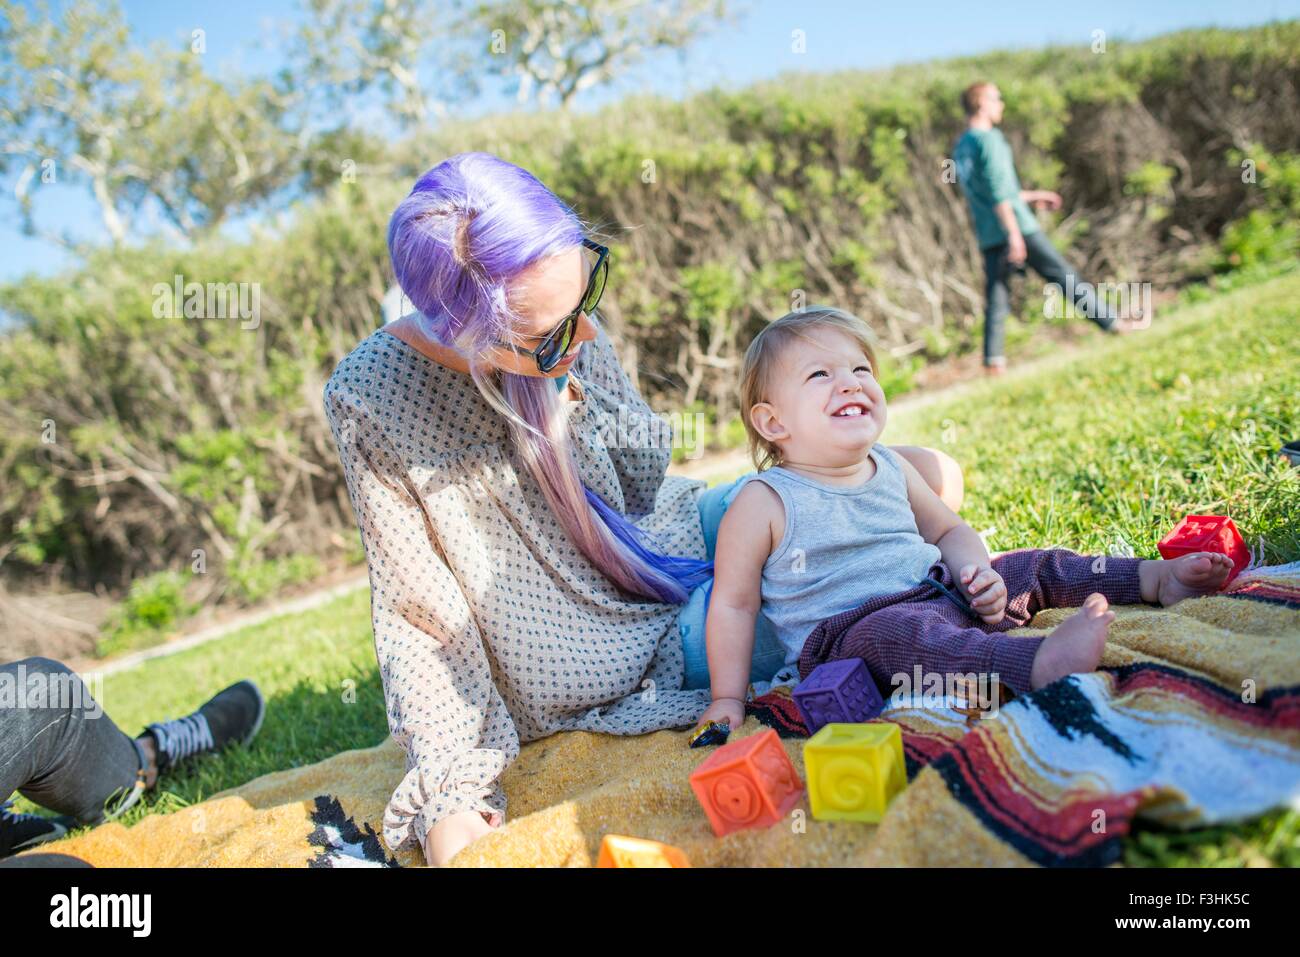 Mother and baby at picnic, El Capitan, California, USA Stock Photo